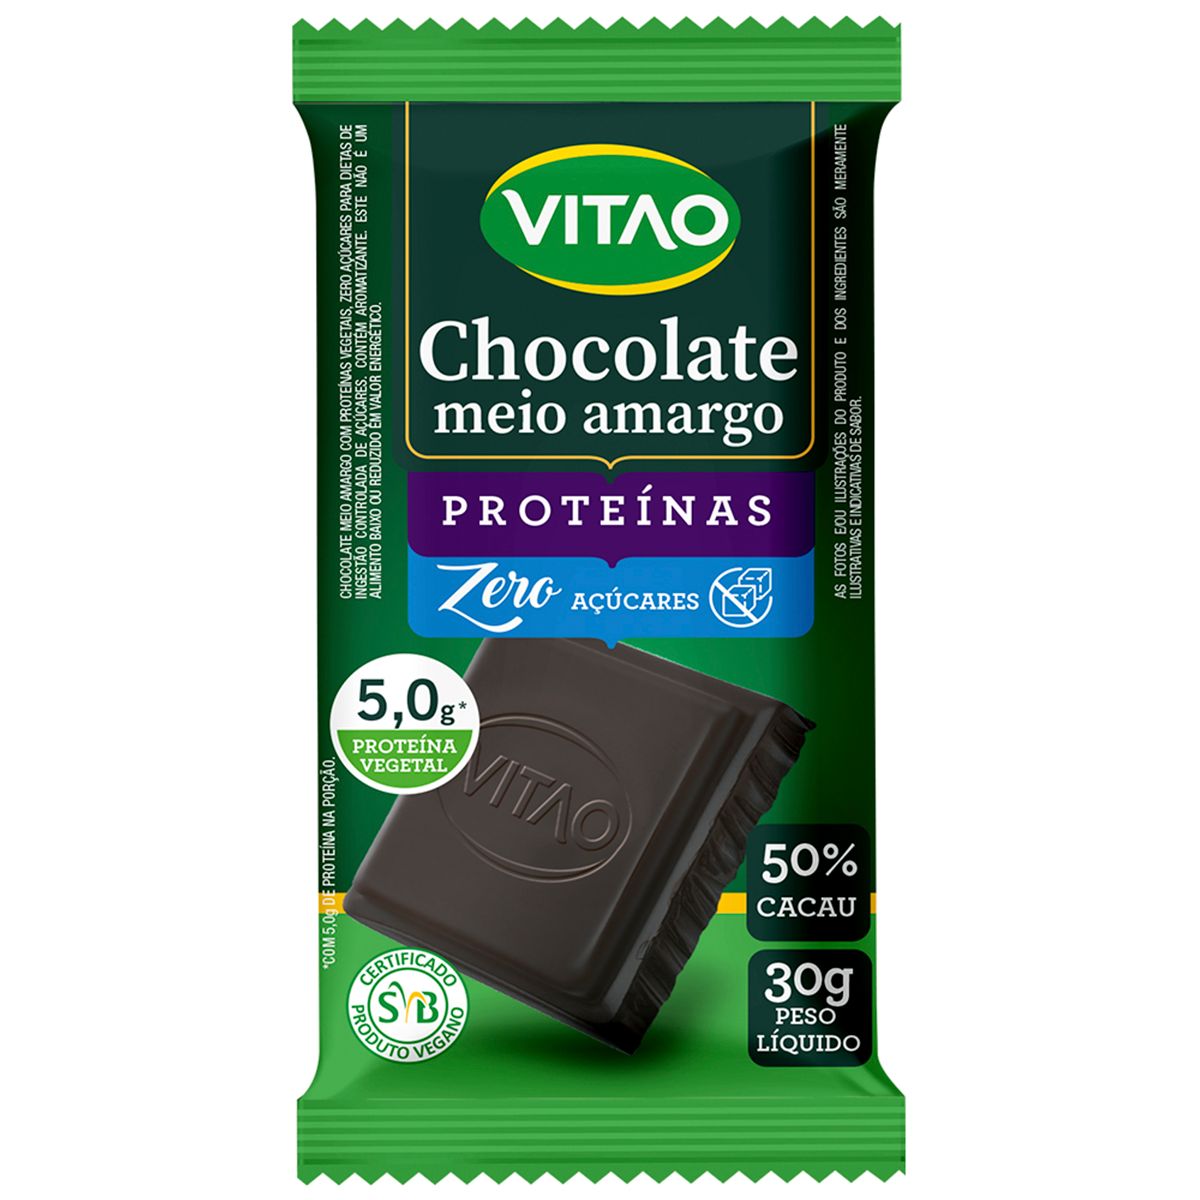 Chocolate Vitao Meio Amargo Zero Açúcar 50% Cacau 30g